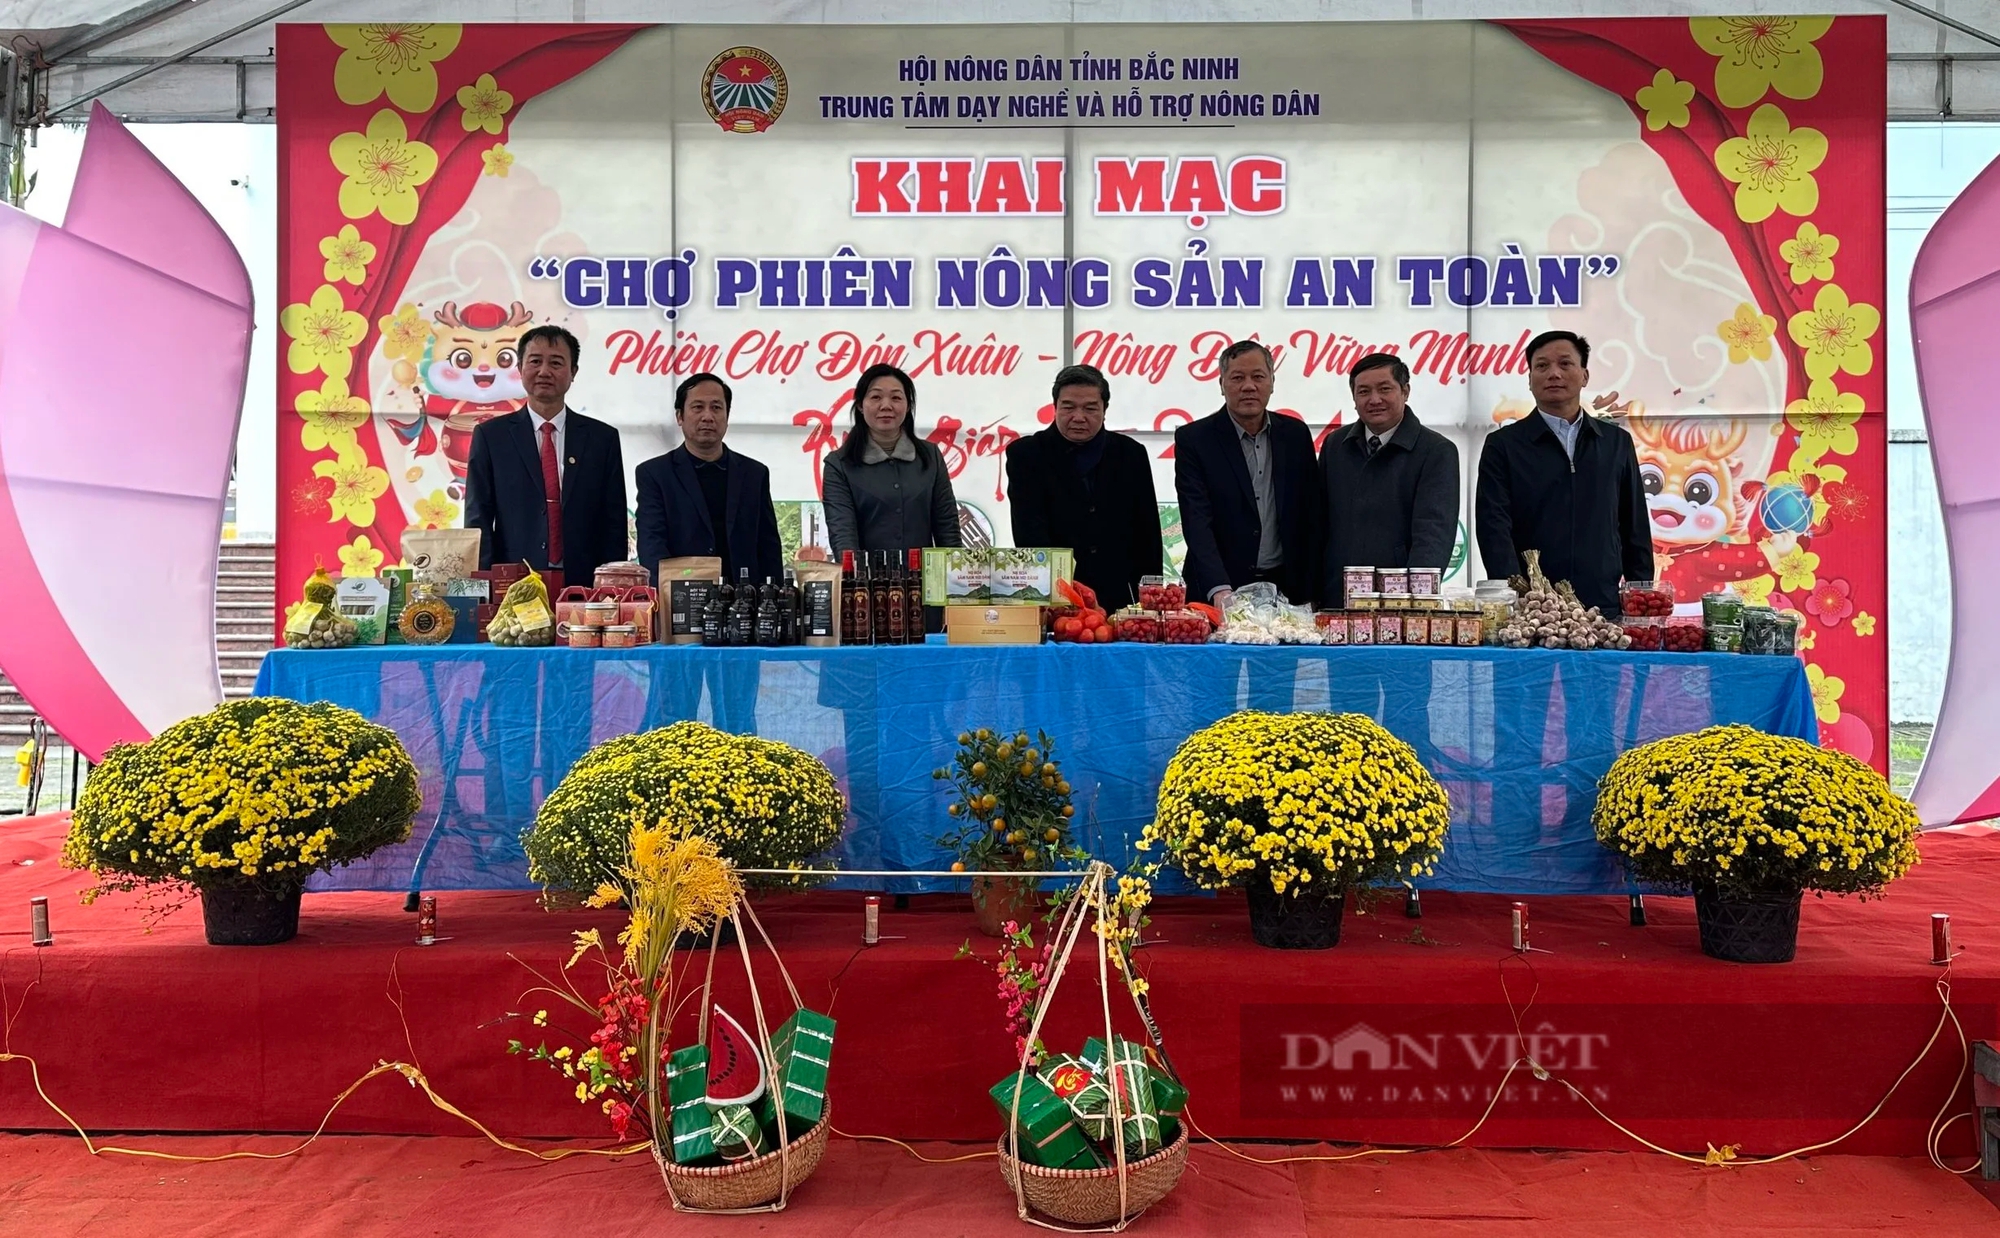 Hội Nông dân tỉnh Bắc Ninh khai mạc chợ phiên nông sản an toàn- Ảnh 1.